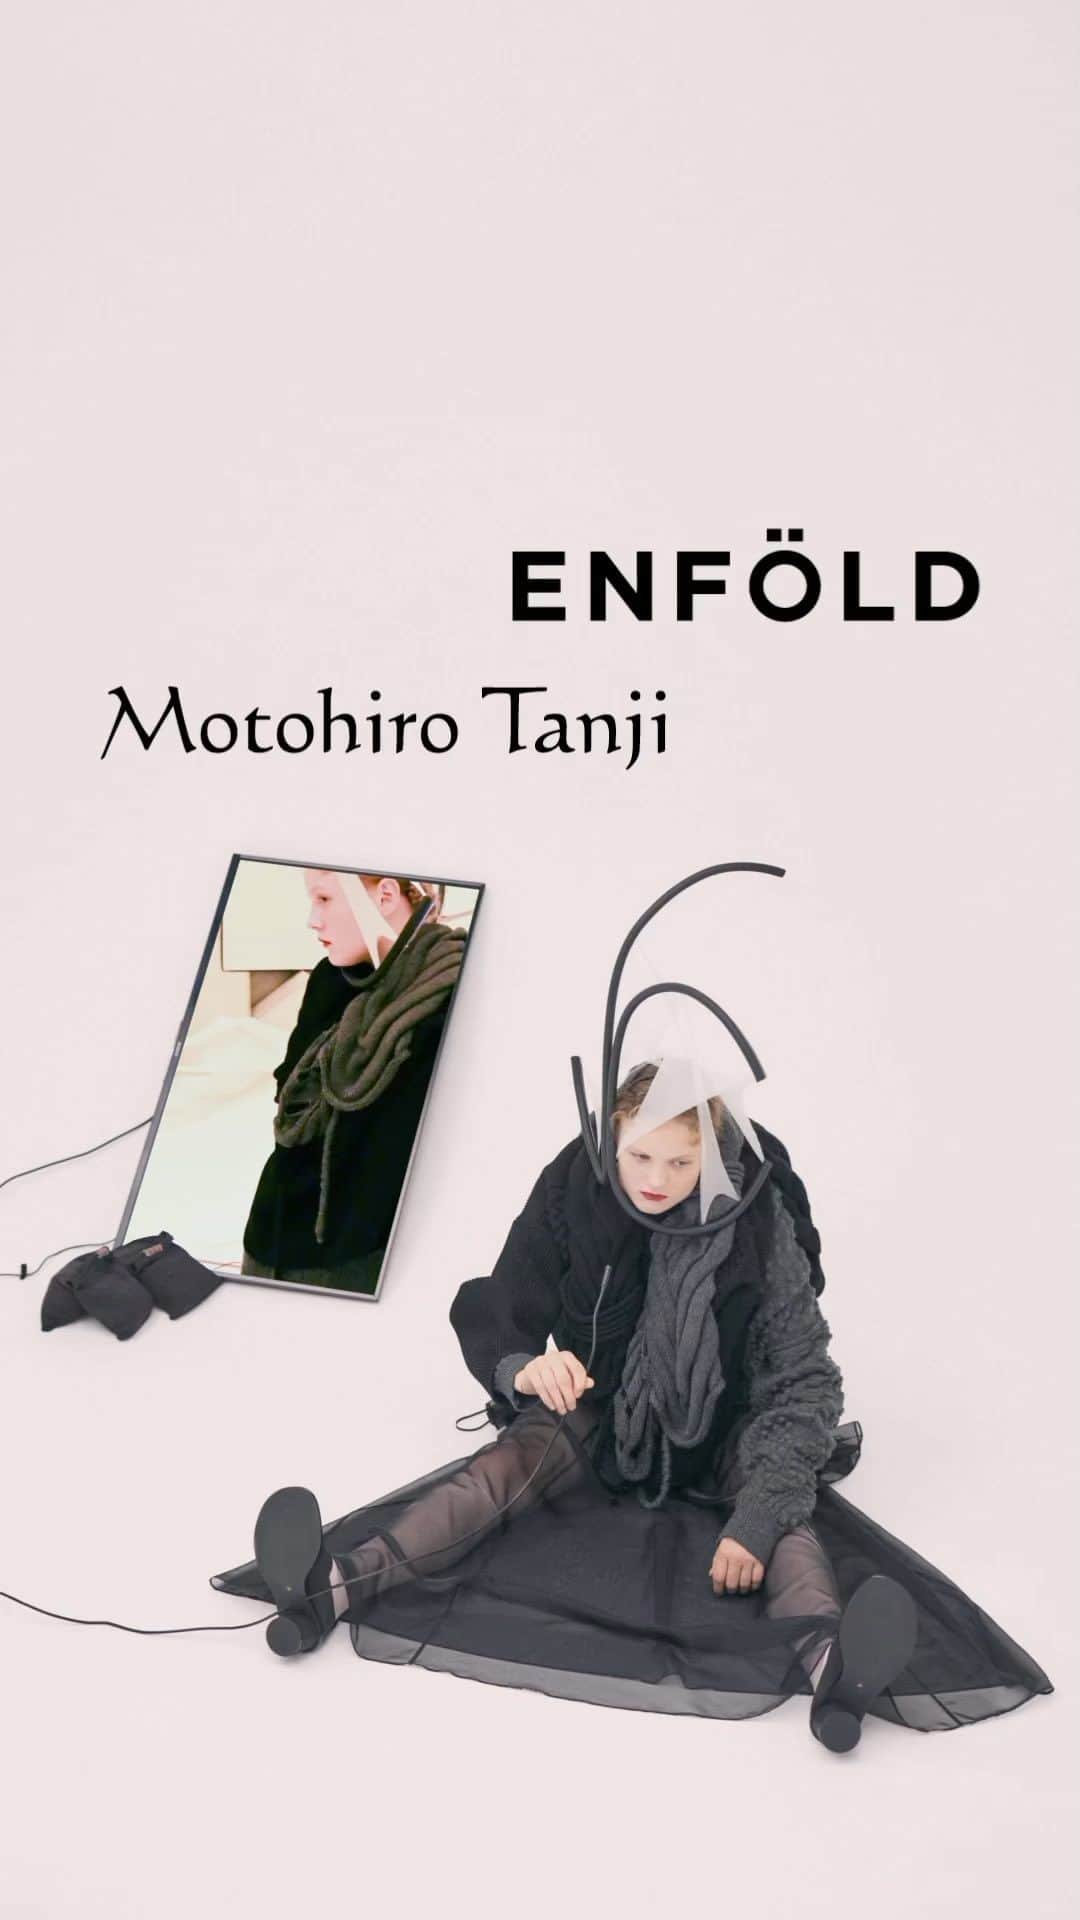 ENFÖLDのインスタグラム：「ENFÖLD × Motohiro Tanji( @motohirotanji.knit )  ENFÖLDとニットブランド｢MotohiroTanji｣の丹治基浩氏による コラボレーションをローンチいたします。 ENFÖLDデザインチームによって「皮膚」というテーマに基づきイメージされたデザインを、丹治基浩氏の高いニッティング技術を用いて、生々しくもモードで硬質なアイテムとして具現化されたコレクションになっています。  -  Theme: 皮膚  人間の「皮膚」の年齢とともに現れる変化に着目したコレクション。 弛んだり、皺が入ったり、膨らんだり、萎んだり、 生きていく上で皮膚に刻まれていくものは美しい。 歳を重ねることで自然と現れる皮膚の変化は、決してマイナスな要素ではなく、 ひとの日々の暮らし全てが体に施した、美しい彫刻であると捉えました。 このコレクションは歳を重ねた体の変化を美しく変換する、 ポジティブなメッセージでもあります。  -  丹治基浩 | Motohiro Tanji ( @motohirotanji.knit )  ニットの可能性を様々な方法で追及するニットデザイナー。 慶應義塾大学卒業後、ノッティンガムトレント大学  MAニットウェアデザイン科を首席で卒業。 卒業後、様々なメゾンにニットテキスタイルを提供する イギリスのAcorn Conceptual Textilesに勤務。 2012年イギリスから帰国後、2013年春夏シーズンに 自身の名を冠したブランドMotohiro Tanjiをスタートする。 ファッション、アート、自身が主催するニット教室、 衣装のニット制作など活動範囲は多岐にわたる。  -  "Skin"  Skin will sag, have wrinkles, swells, shrinks, and the beauty is that as time goes by, all of it carves into your skin. The changes in the skin that naturally appear with age are not negative features, but rather a beautiful sculpture made on the body by all aspects of a person's daily life.  This collection focuses on the changes that appear with age in the human skin.  It is designed to sculpt the fabric with organically rounded stitches, switching lines, and quilting to express the beauty of the skin. The wrinkles of the lily flower are photographed in close-up and printed on the entire surface to sublimate the wrinkles and sagging beautifully.  In addition, the collaboration item with the designer Motohiro Tanji from the knit brand "Motohiro Tanji" which uses advanced knitwear techniques to create a structured item with a vivid mode.  ENFÖLD 23FW collection contains a positive message that transformation of the aging body is a beautiful change in life.  -  "피부"  느슨해지고, 주름지고, 부풀고, 쪼그라드는 등, 살아가며 피부에 새겨지는 것들은 아름답습니다. 나이가 들어감에 따라 자연스레 나타나는 피부의 변화는 결코 부정적인 요소가 아닌, 일상이 몸에 새긴 아름다운 조각들입니다. 이번 컬렉션은 나이가 들며 인간의 ‘피부’에 나타나는 변화에 주목했습니다.  컬렉션은 유기적으로 둥글게 만든 스티치나 스위칭 라인, 퀼팅으로 원단을 조각하듯 디자인해 피부의 아름다움을 표현했습니다. 백합꽃의 주름을 확대해 촬영해 전면에 프린트한 아이템은 피부의 주름이나 처짐을 아름답게 승화합니다.  또한, 자신의 이름을 딴 니트 브랜드의 디자이너 모토히로 탄지와의 협업 제품은 고도의 니트 테크닉을 사용해 생동감 넘치면서도 탄탄하게 완성됐습니다.  ENFÖLD 23FW 컬렉션은 나이를 먹어가며 나타나는 몸의 변화는 곧 삶의 아름다운 변화라는 긍정적인 메시지를 담고 있습니다.  #enfold_official  #enfold #enföld」